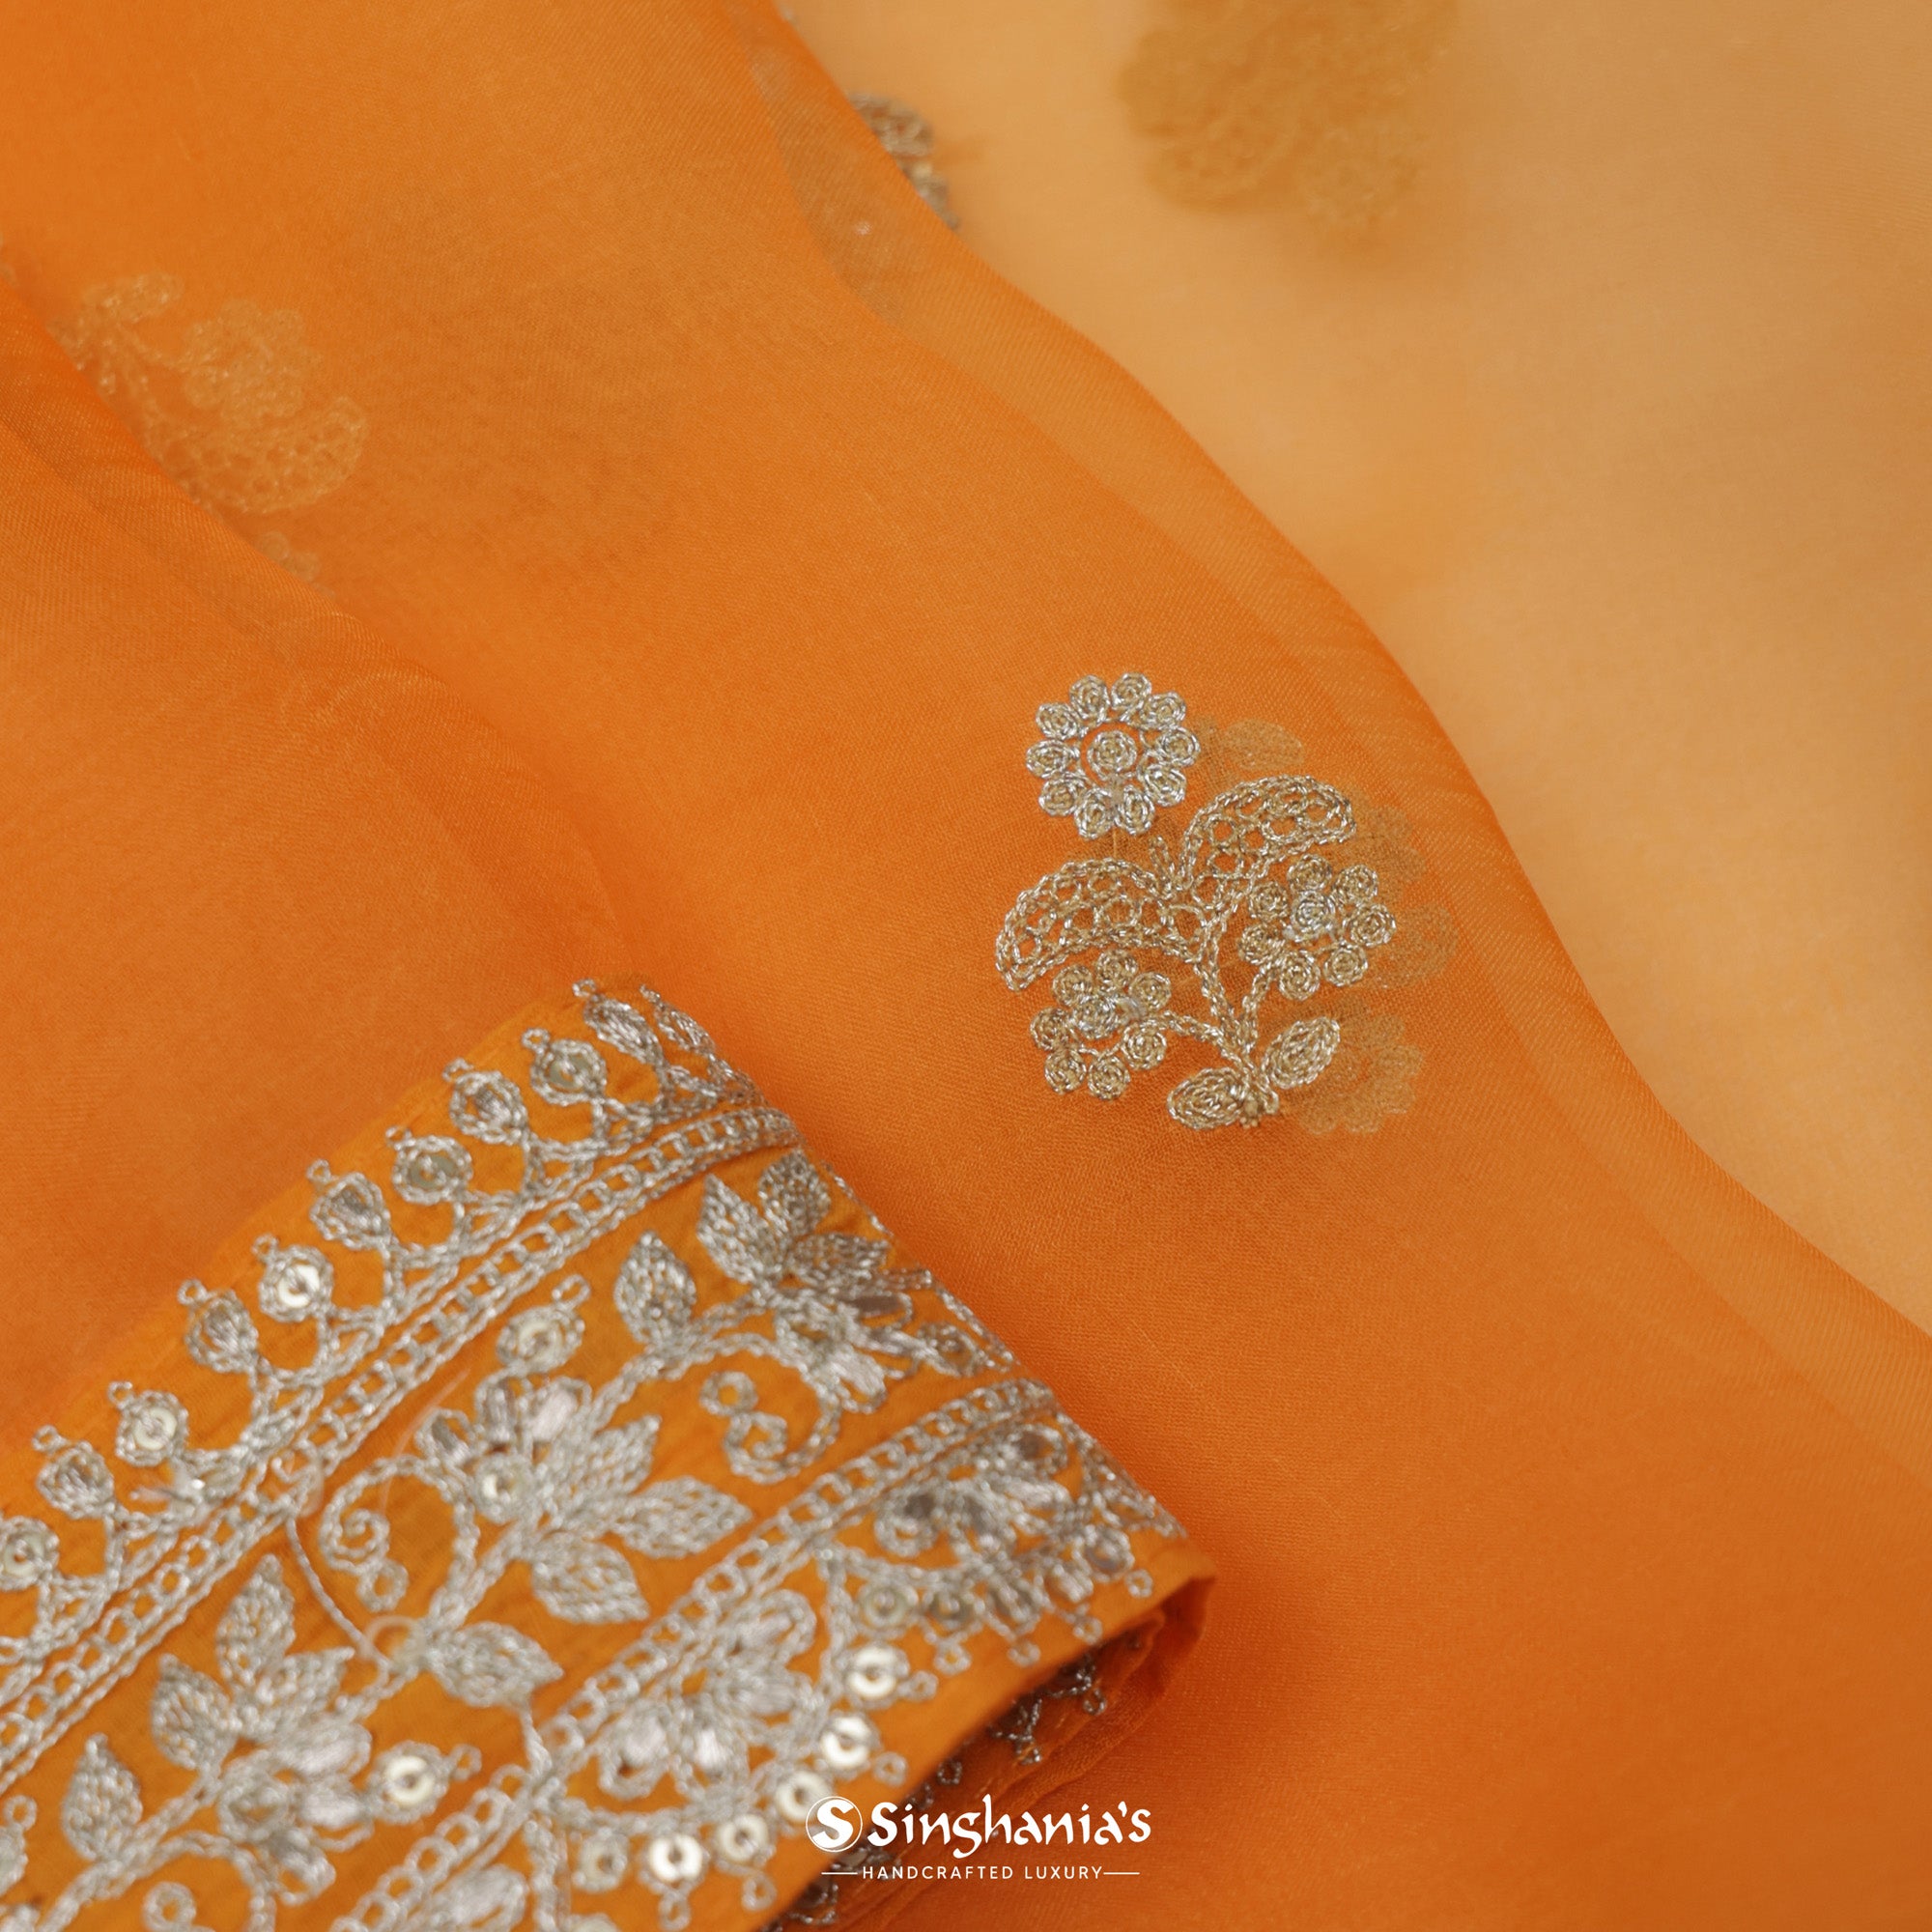 Vivid Tangelo Orange Organza Saree With Embroidery